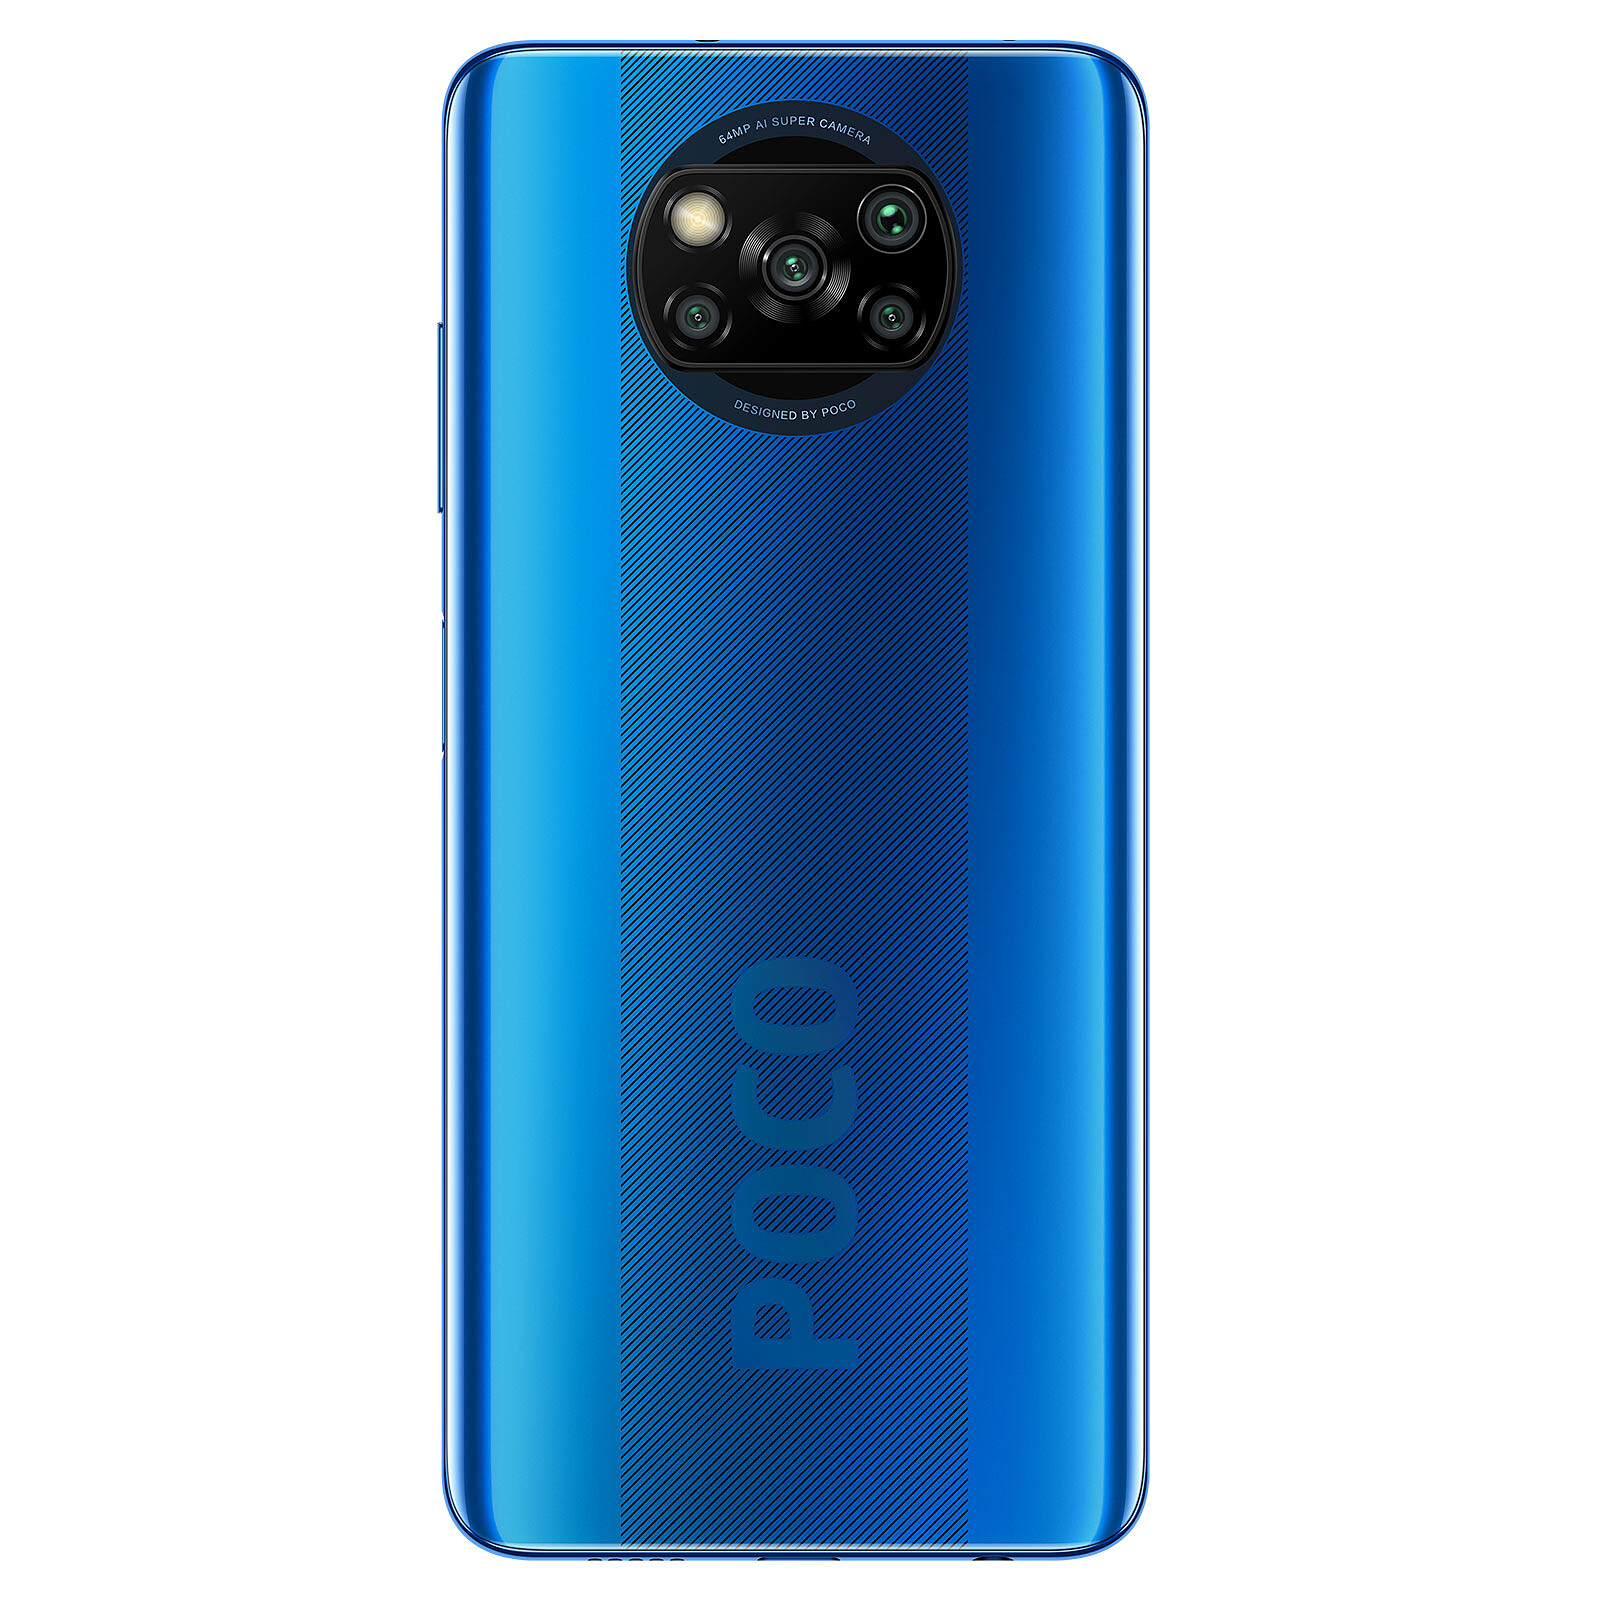 Ecran Display LCD Complet Bleu Pour Xiaomi POCO X3/X3 pro/X3 NFC